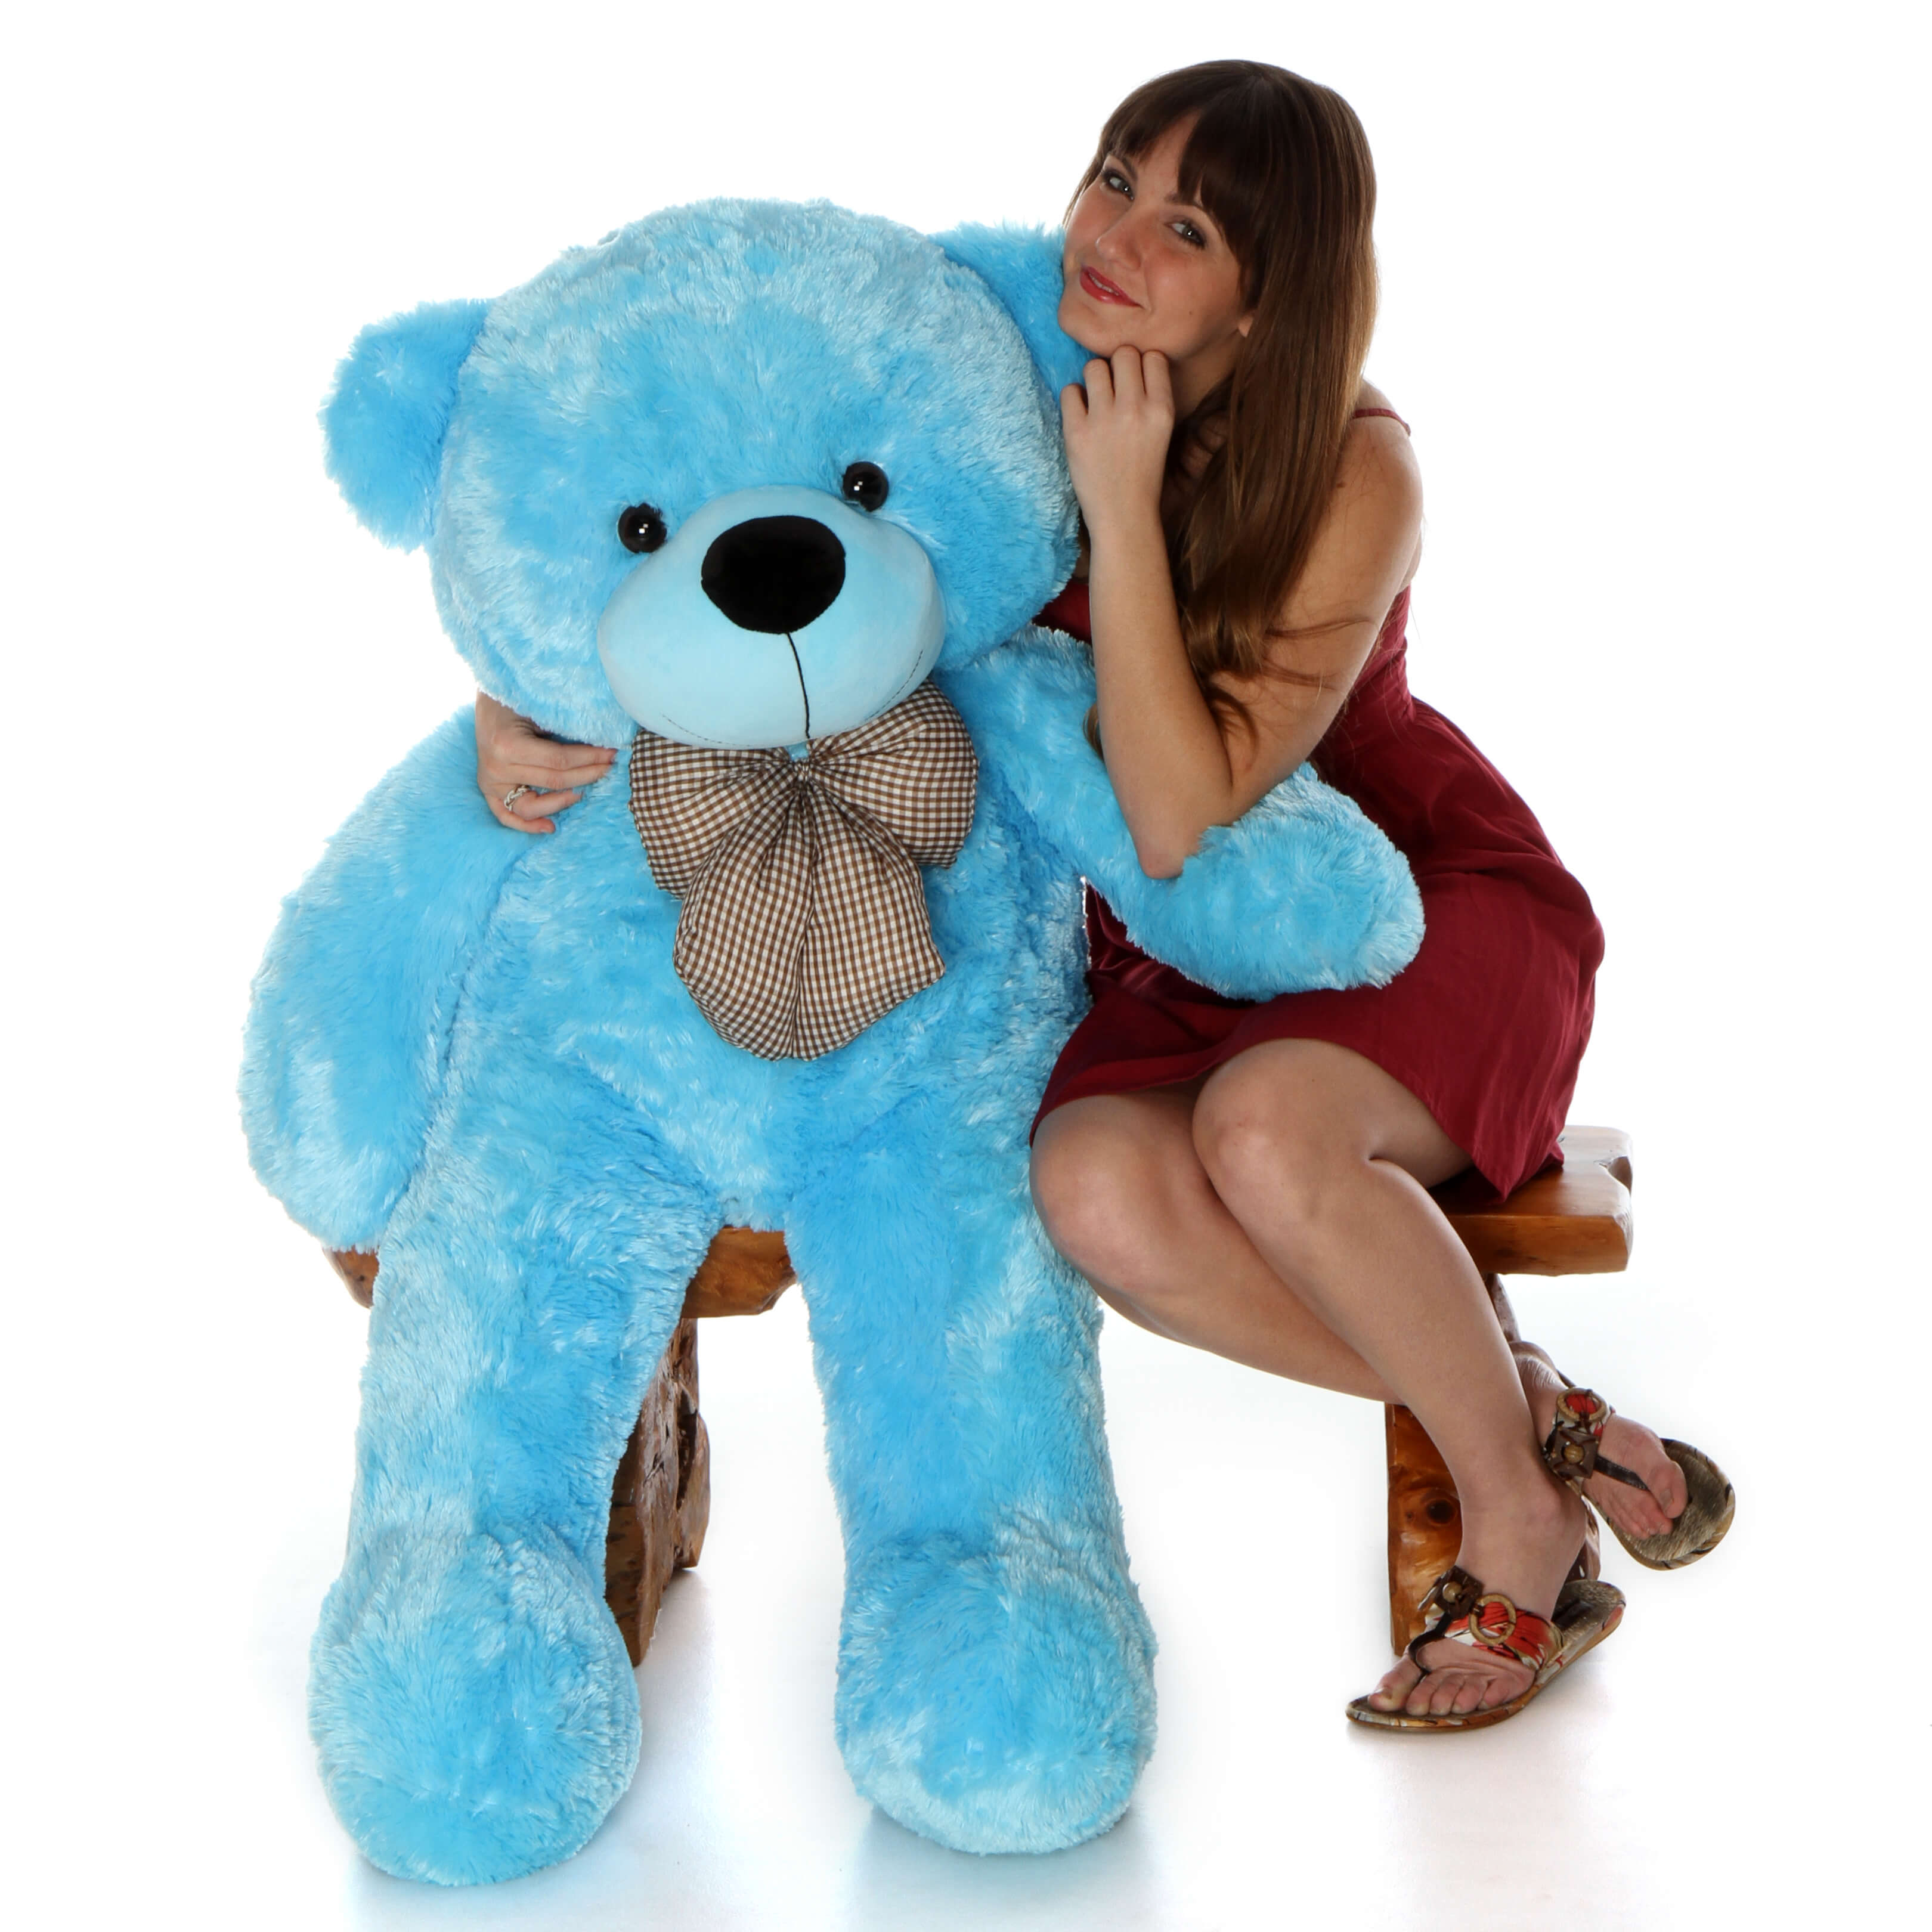 life-size-blue-teddy-bear-happy-cuddles-48in-1.jpg